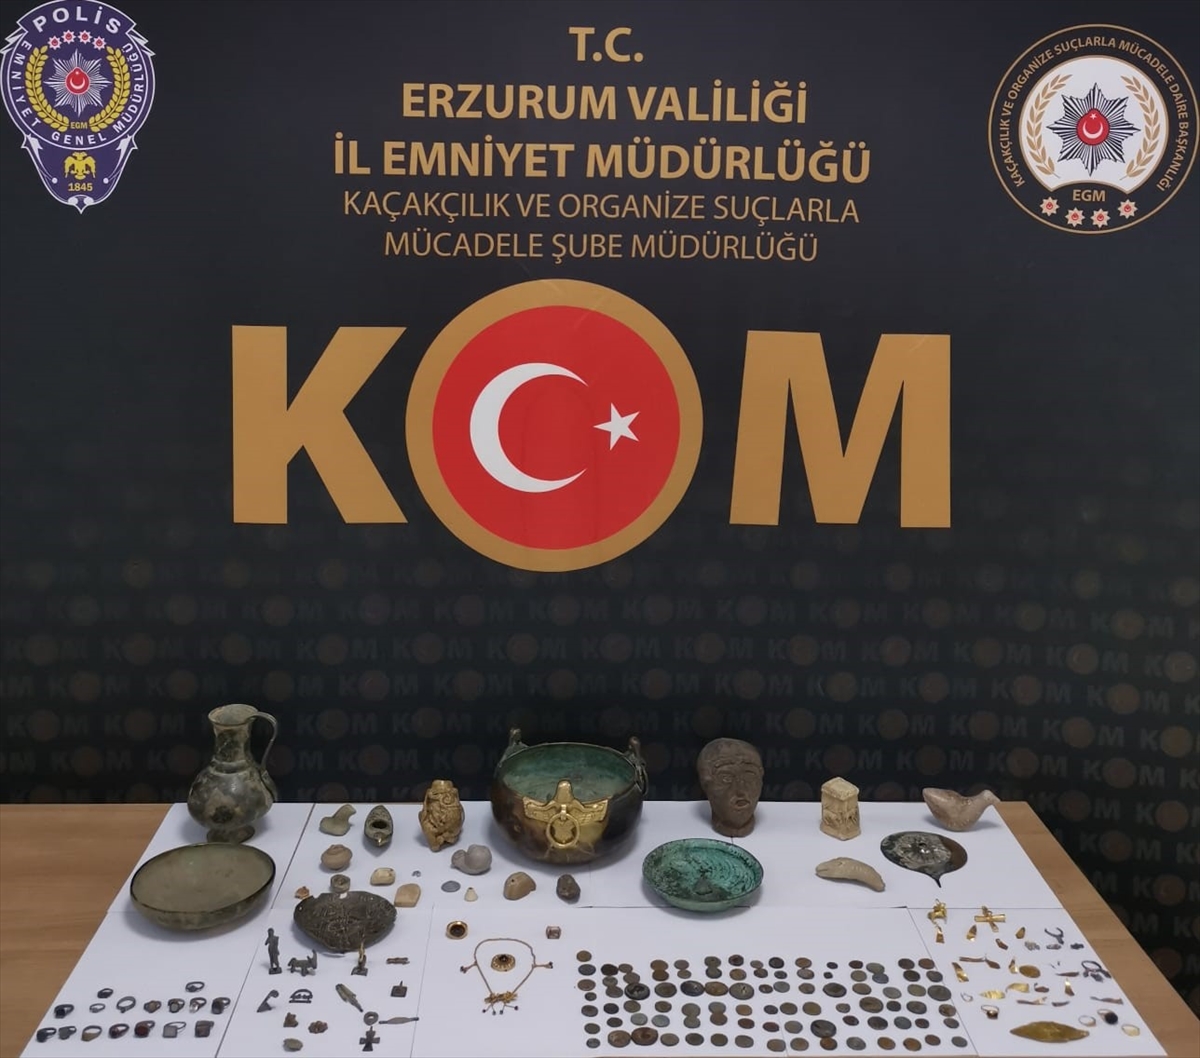 Erzurum'da 182 tarihi obje ele geçirildi, 5 şüpheli gözaltına alındı